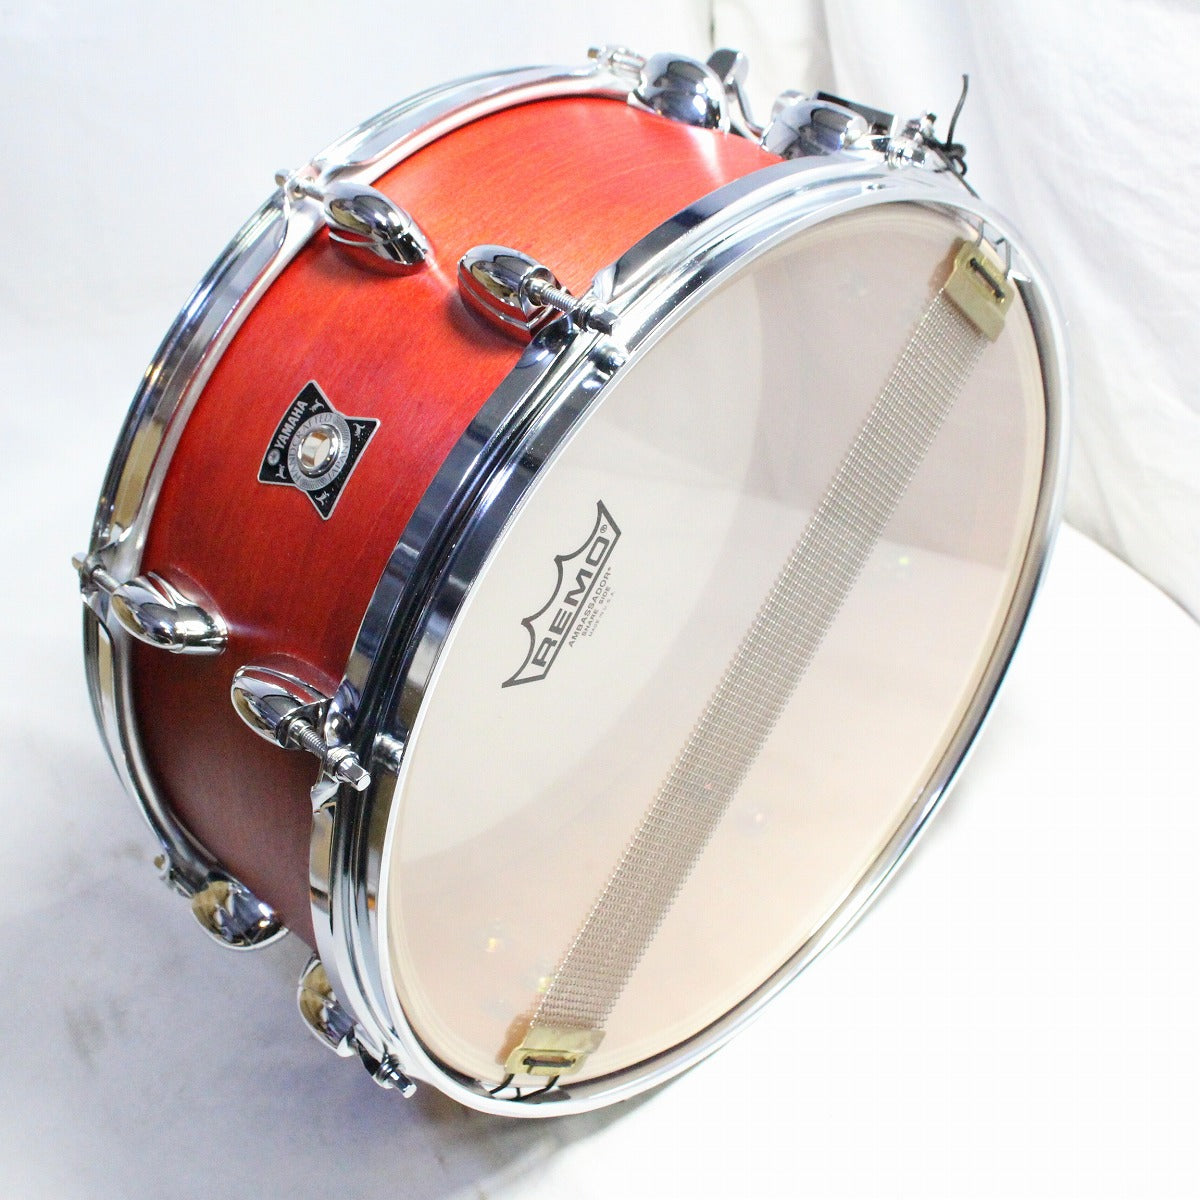 USED YAMAHA / VSD1460 VintageConcept Vintage Apple 14x6 Yamaha Snare Drum [08]